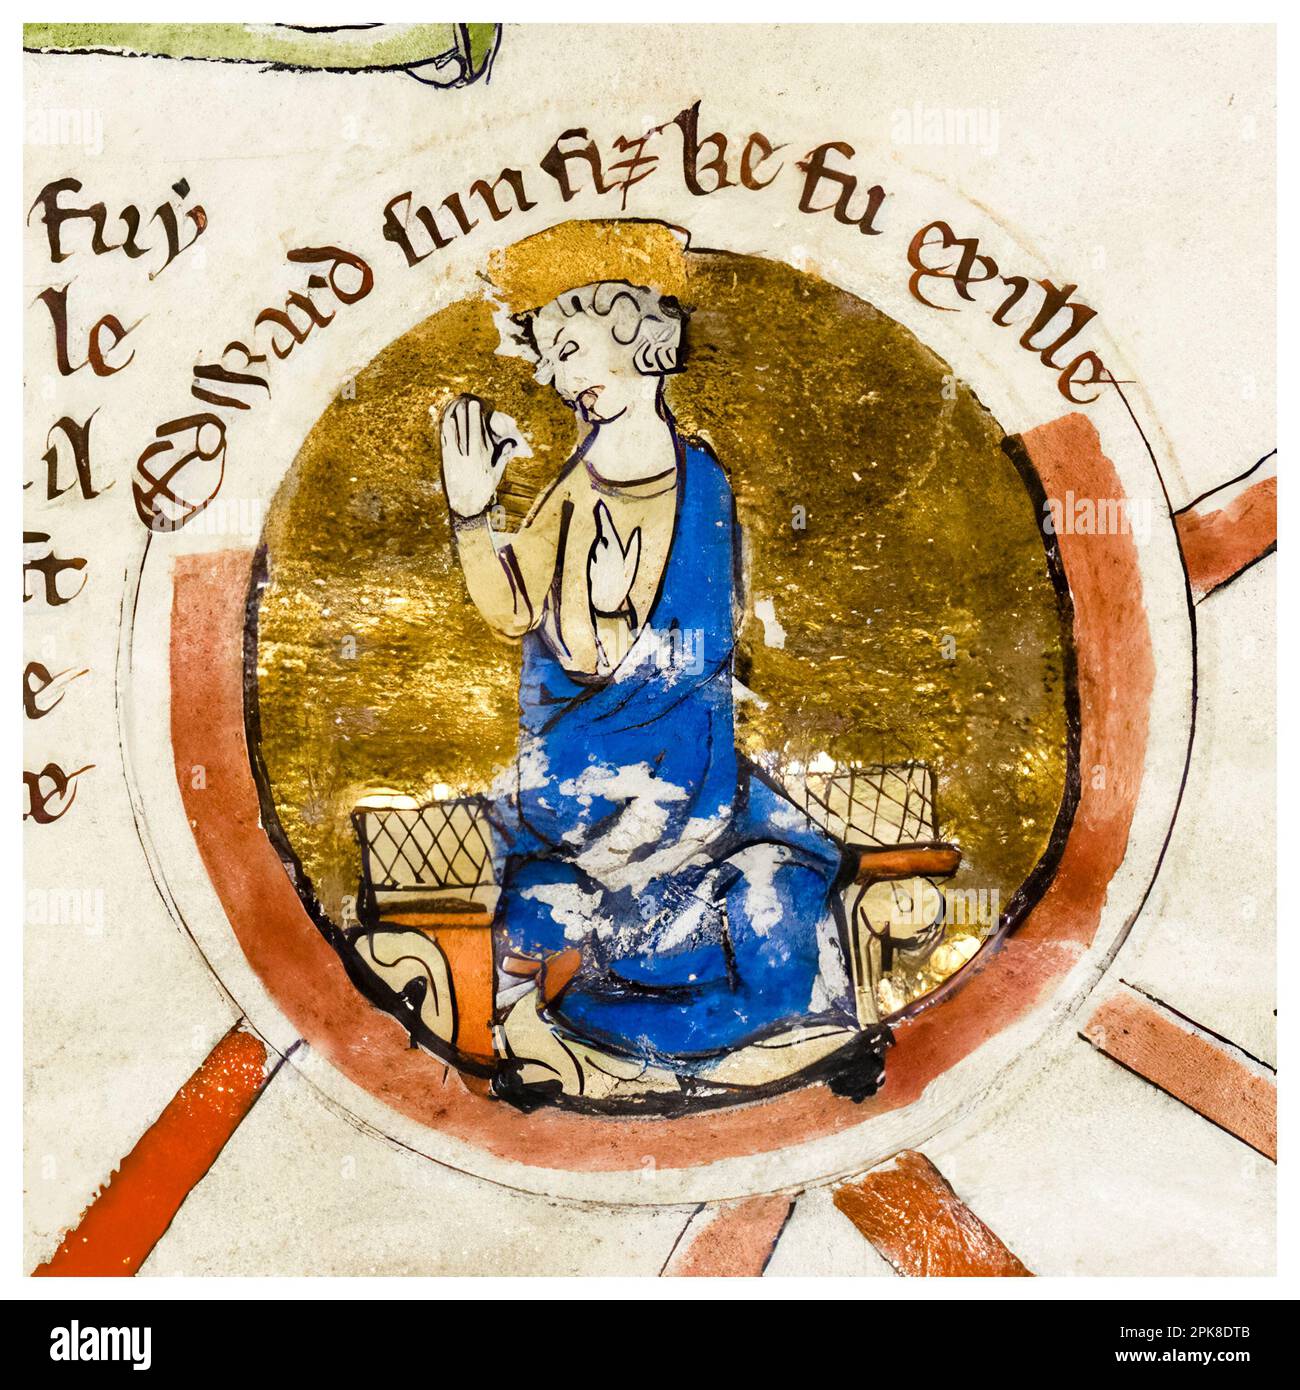 Edward der Exil (1016-1057), auch Edward Aetheling genannt, war der Sohn von König Edmund Ironside und Ealdgyth, beleuchtete Manuskript-Porträtmalerei, vor 1399 Stockfoto